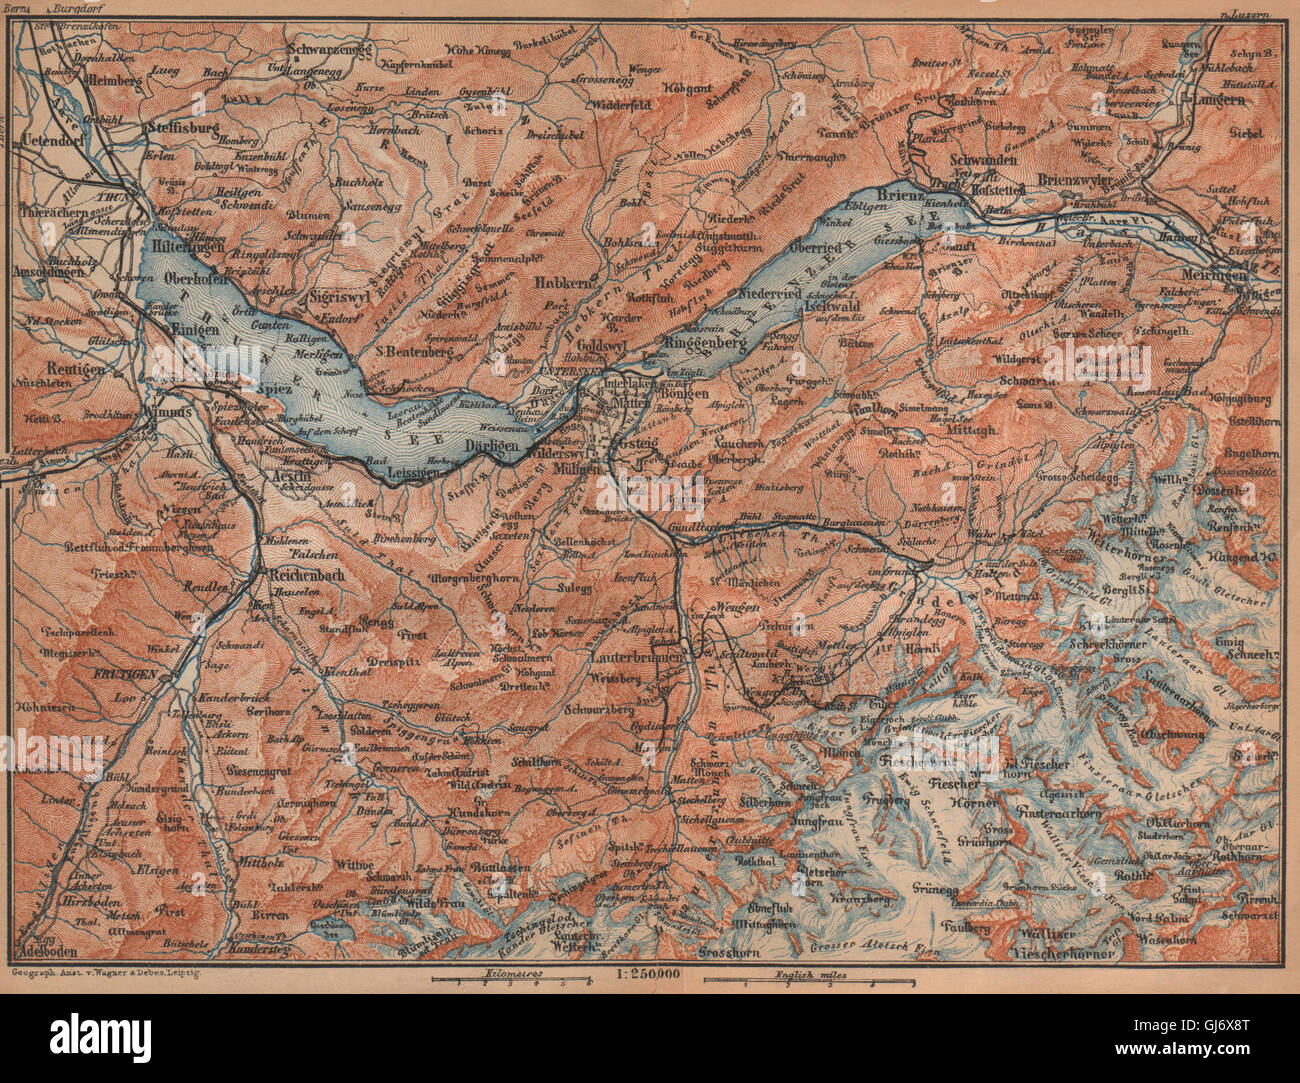 BERNESE OBERLAND. Wengen Mürren Grundelwald Reutigen Interlaken Eiger, 1907 map Stock Photo